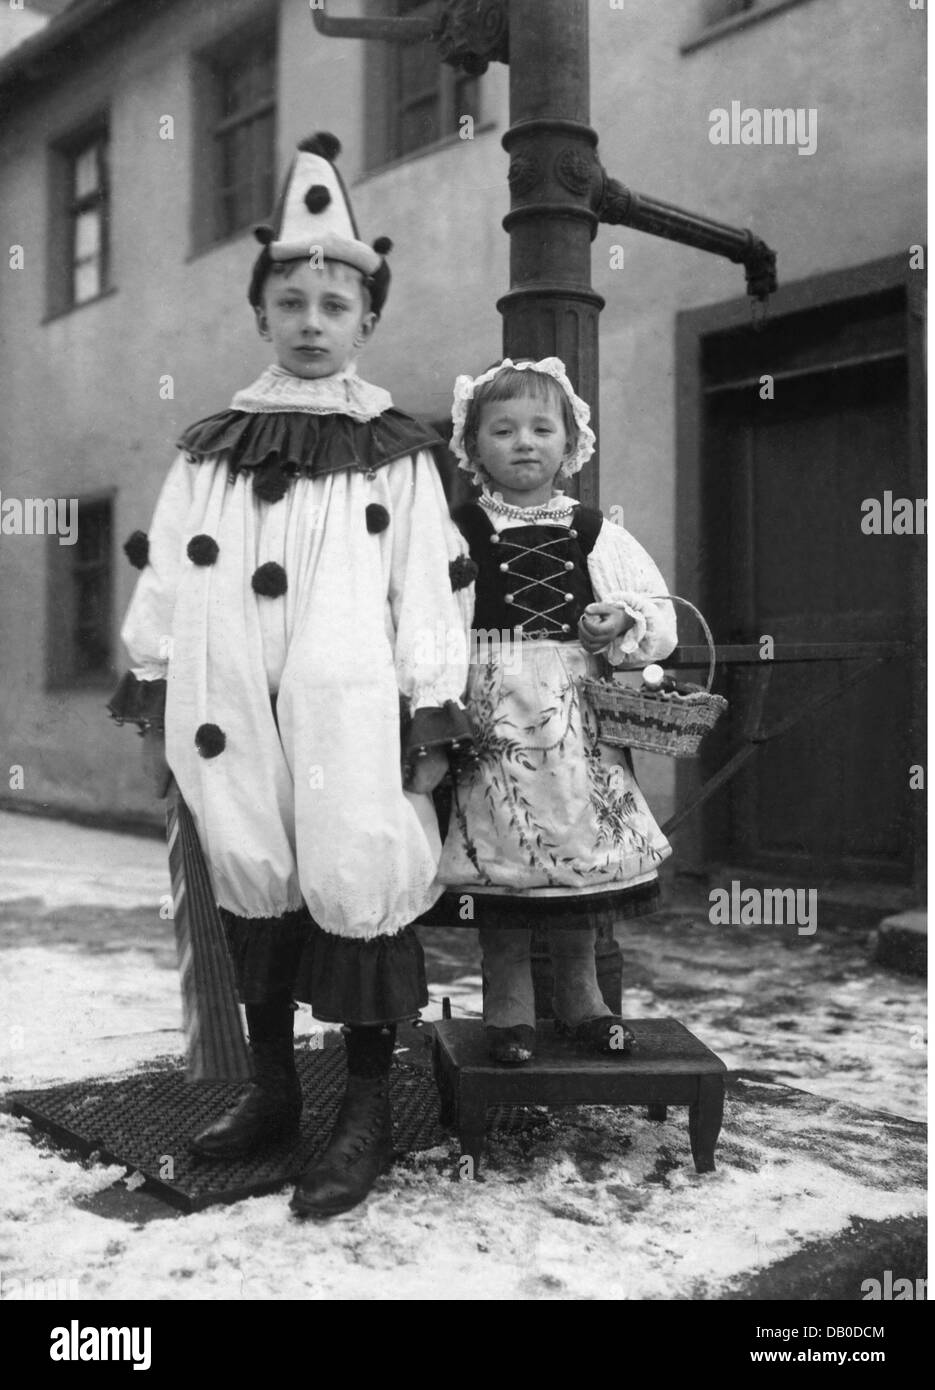 Festlichkeit, Fasching, Kinder verkleidet als Clown und kleine rote Reithaube, volle Länge, um 1910, zusätzliche-Rechte-Clearences-nicht vorhanden Stockfoto